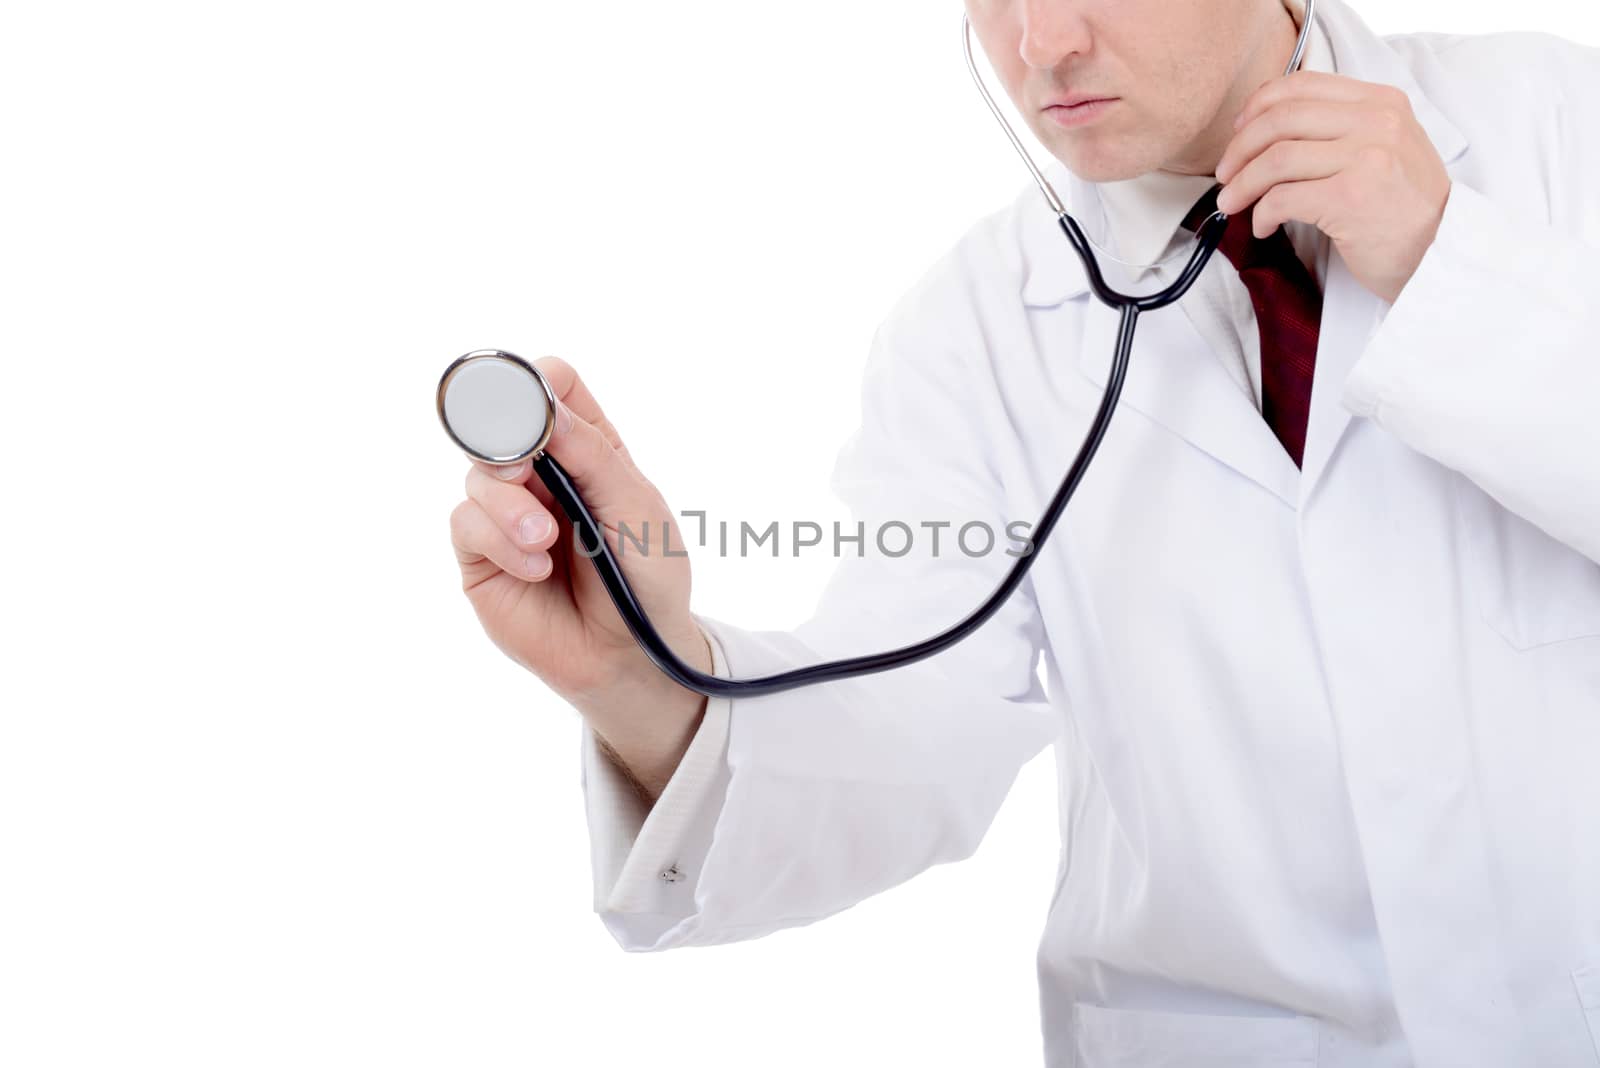 Doctor using stethoscope isolated on white background